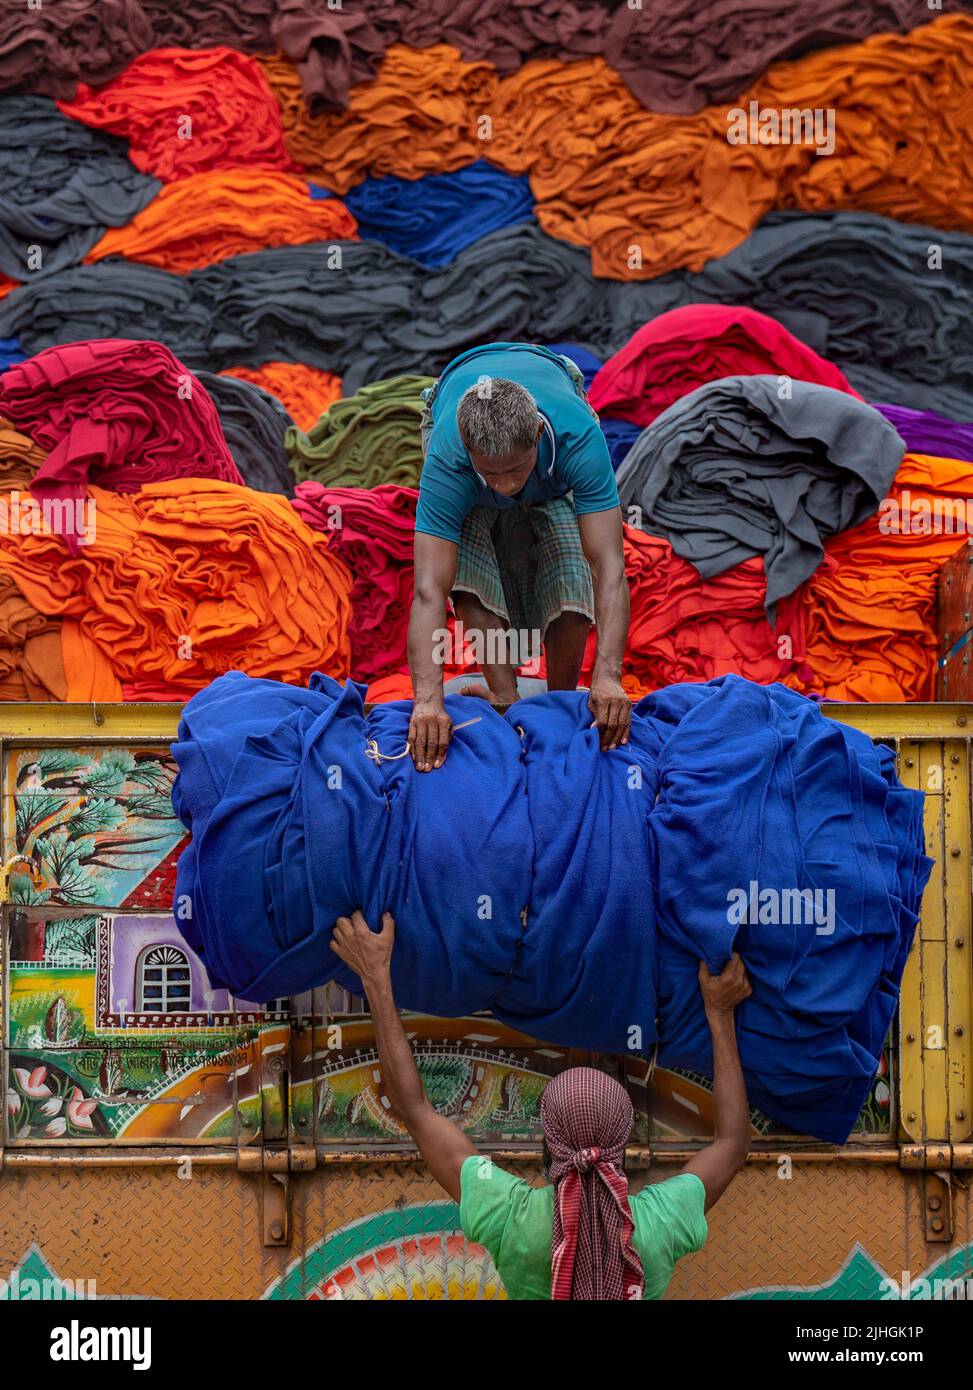 Bunte Decken werden von Arbeitern auf LKWs geladen. Textilindustrie in Bangladesch Stockfoto